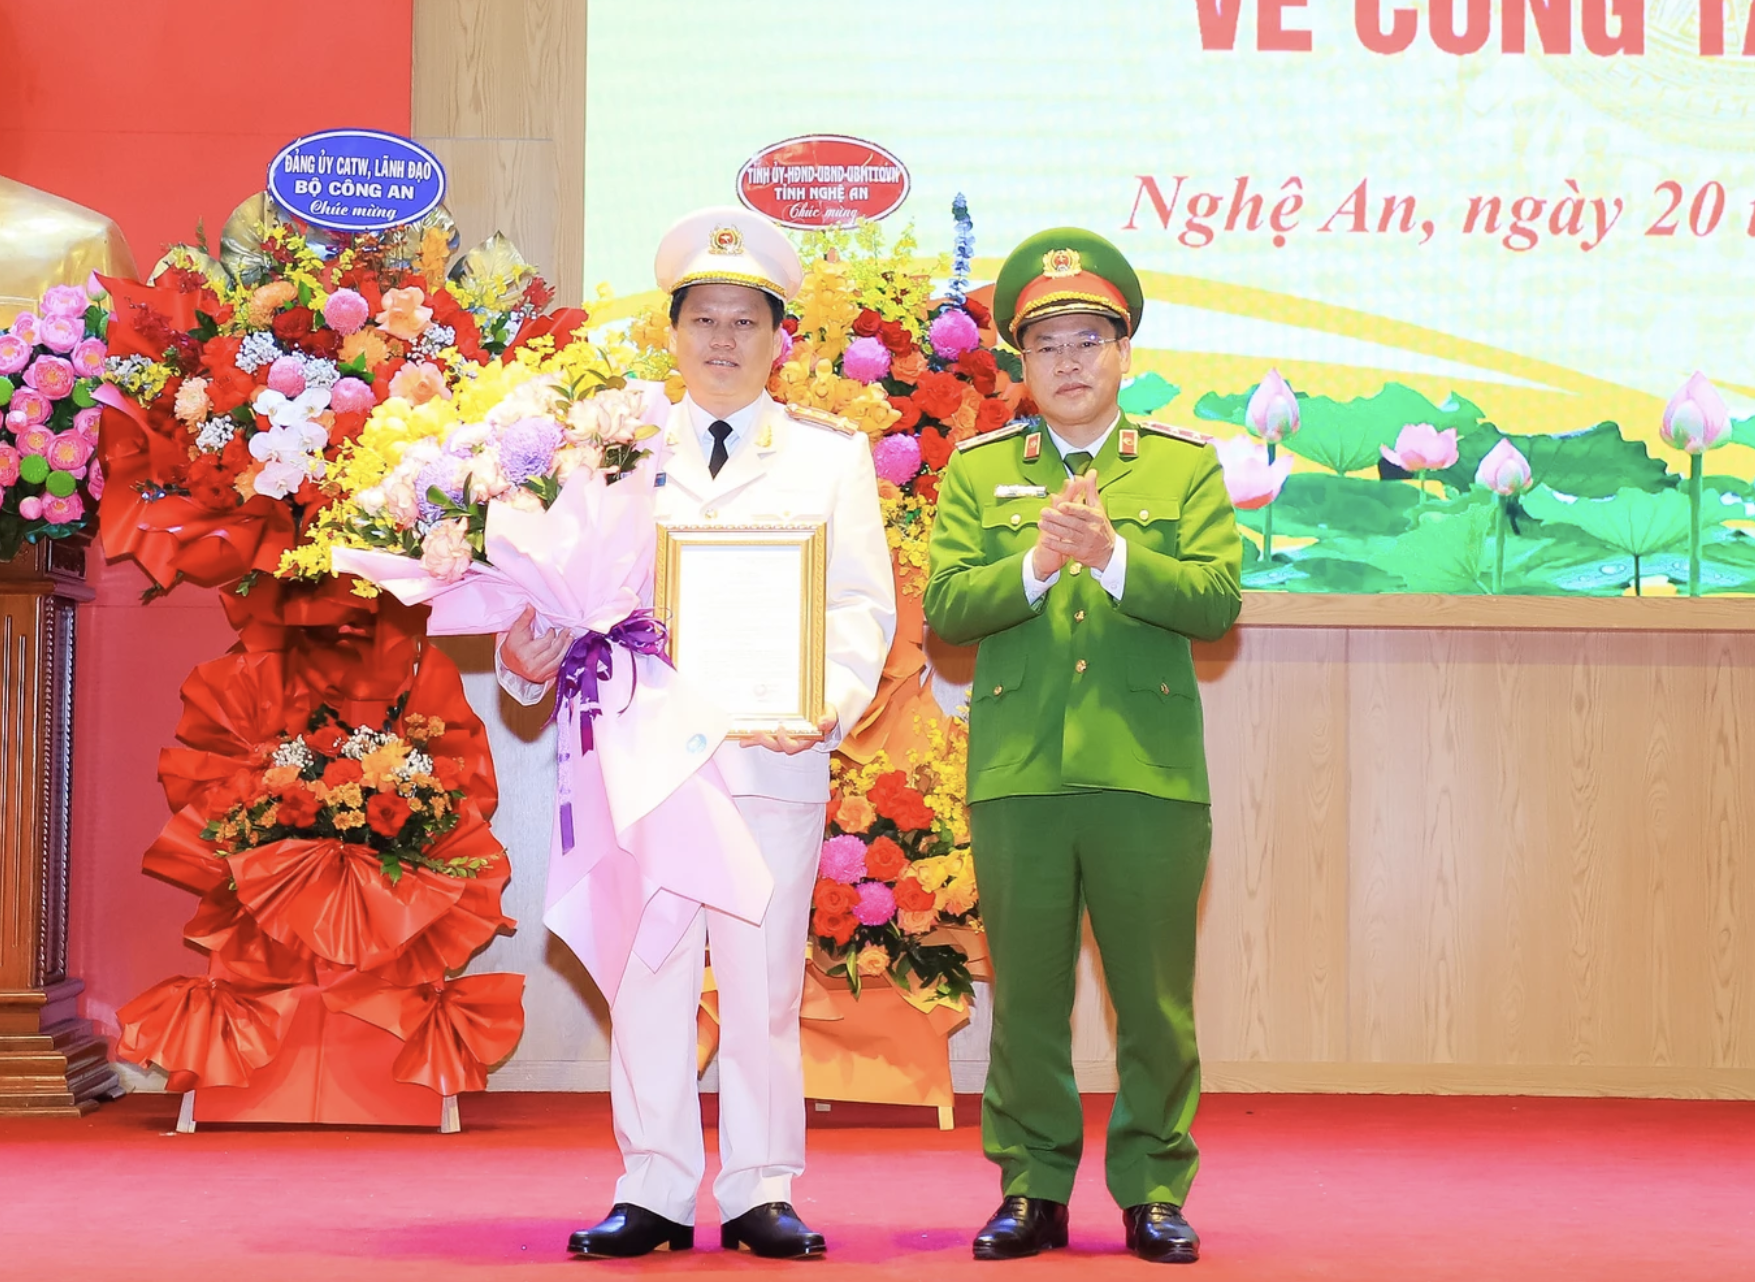 Đại tá 46 tuổi được điều động làm Giám đốc công an tỉnh Nghệ An - Ảnh 1.